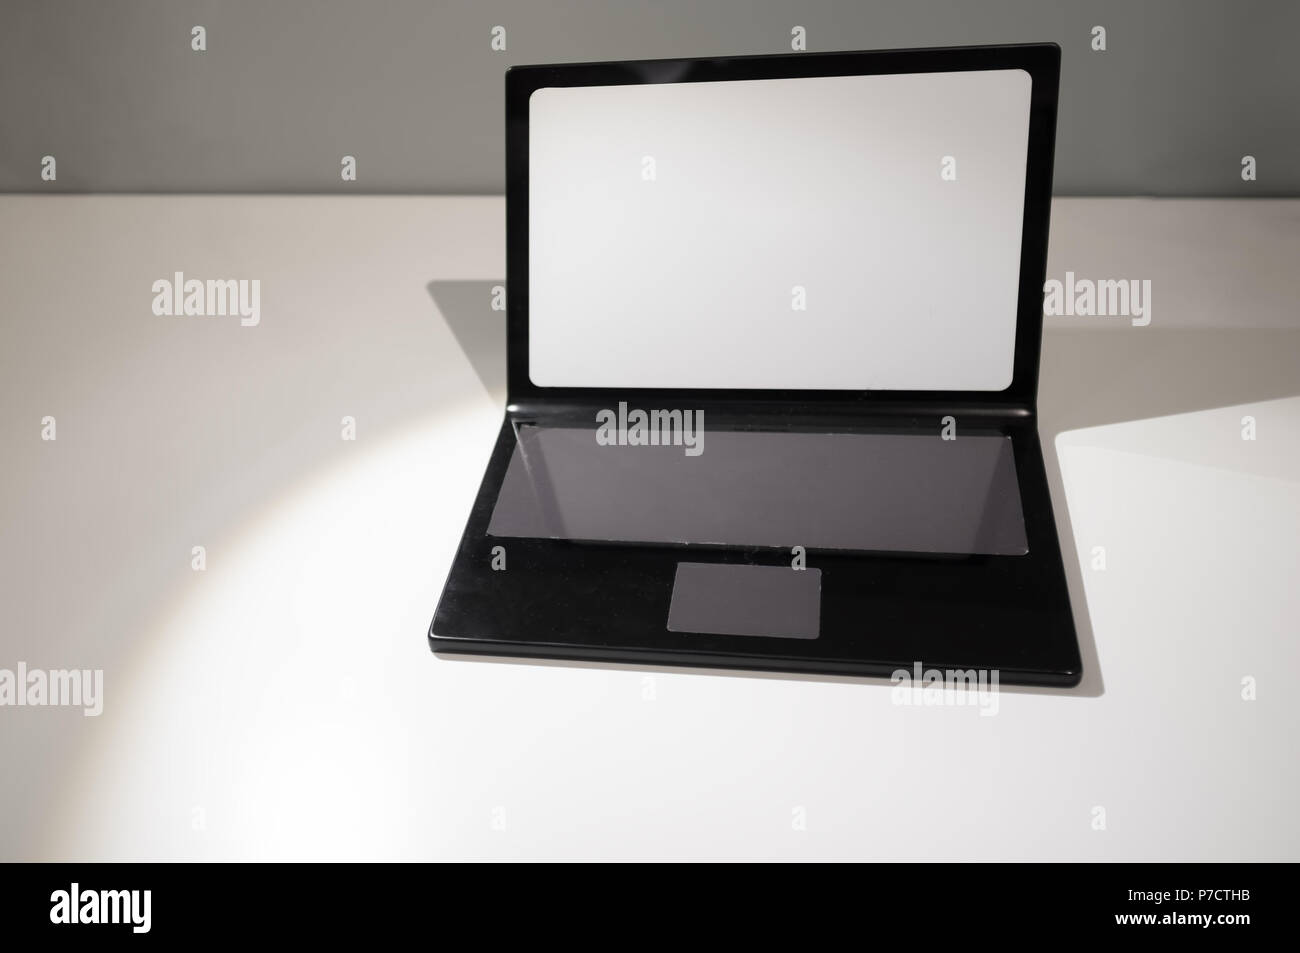 Maquette d'ordinateur portable sur le tableau blanc en perspective with copy space Banque D'Images